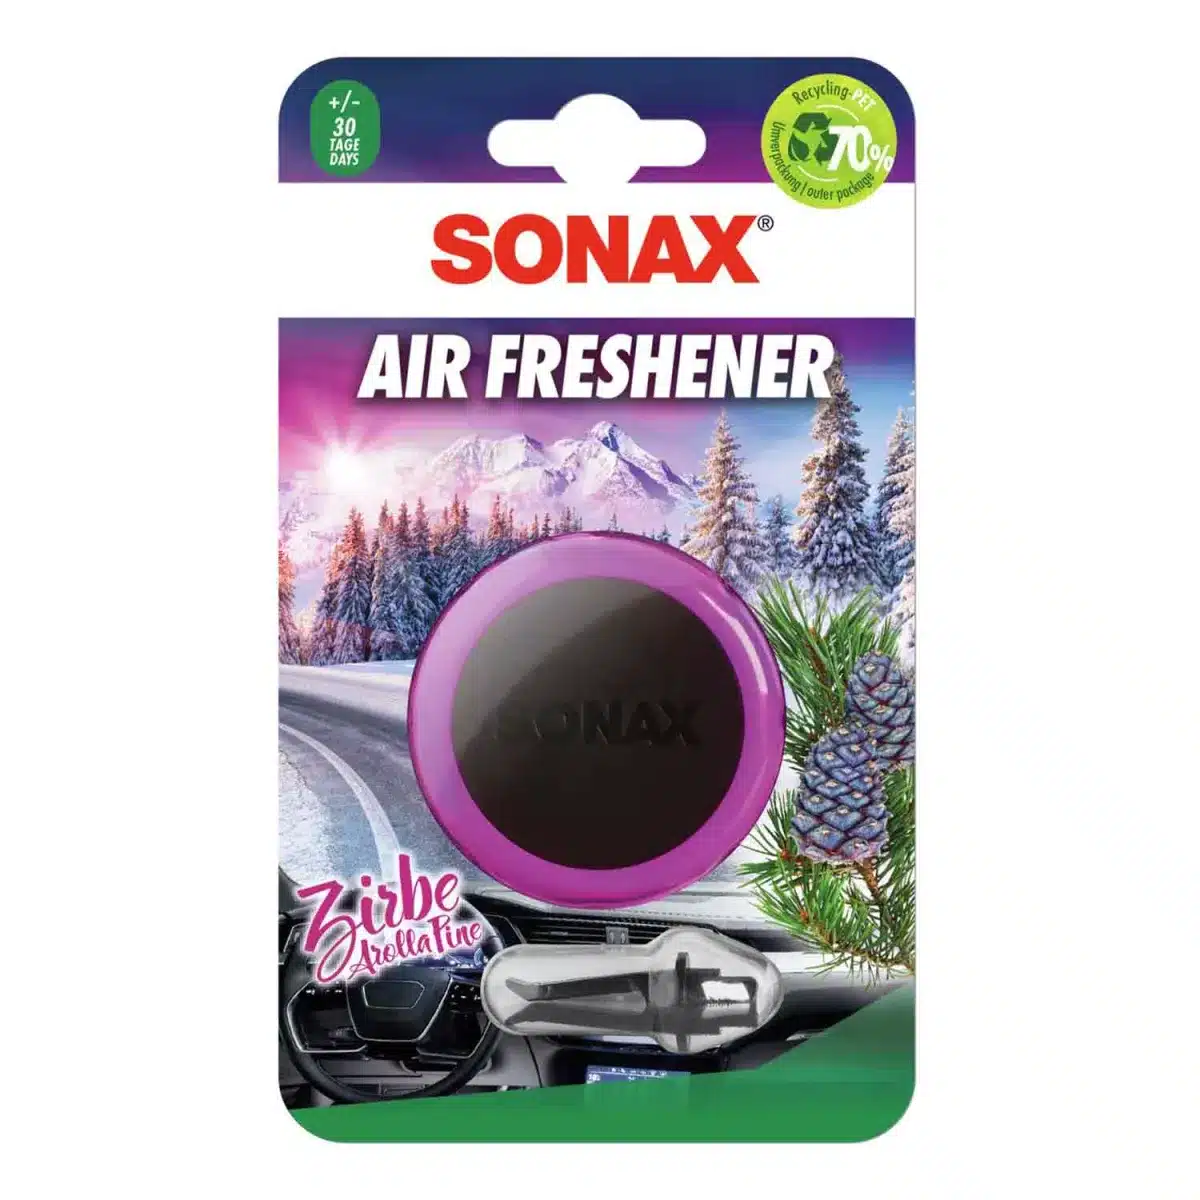 SONAX Air Freshener Zirbe